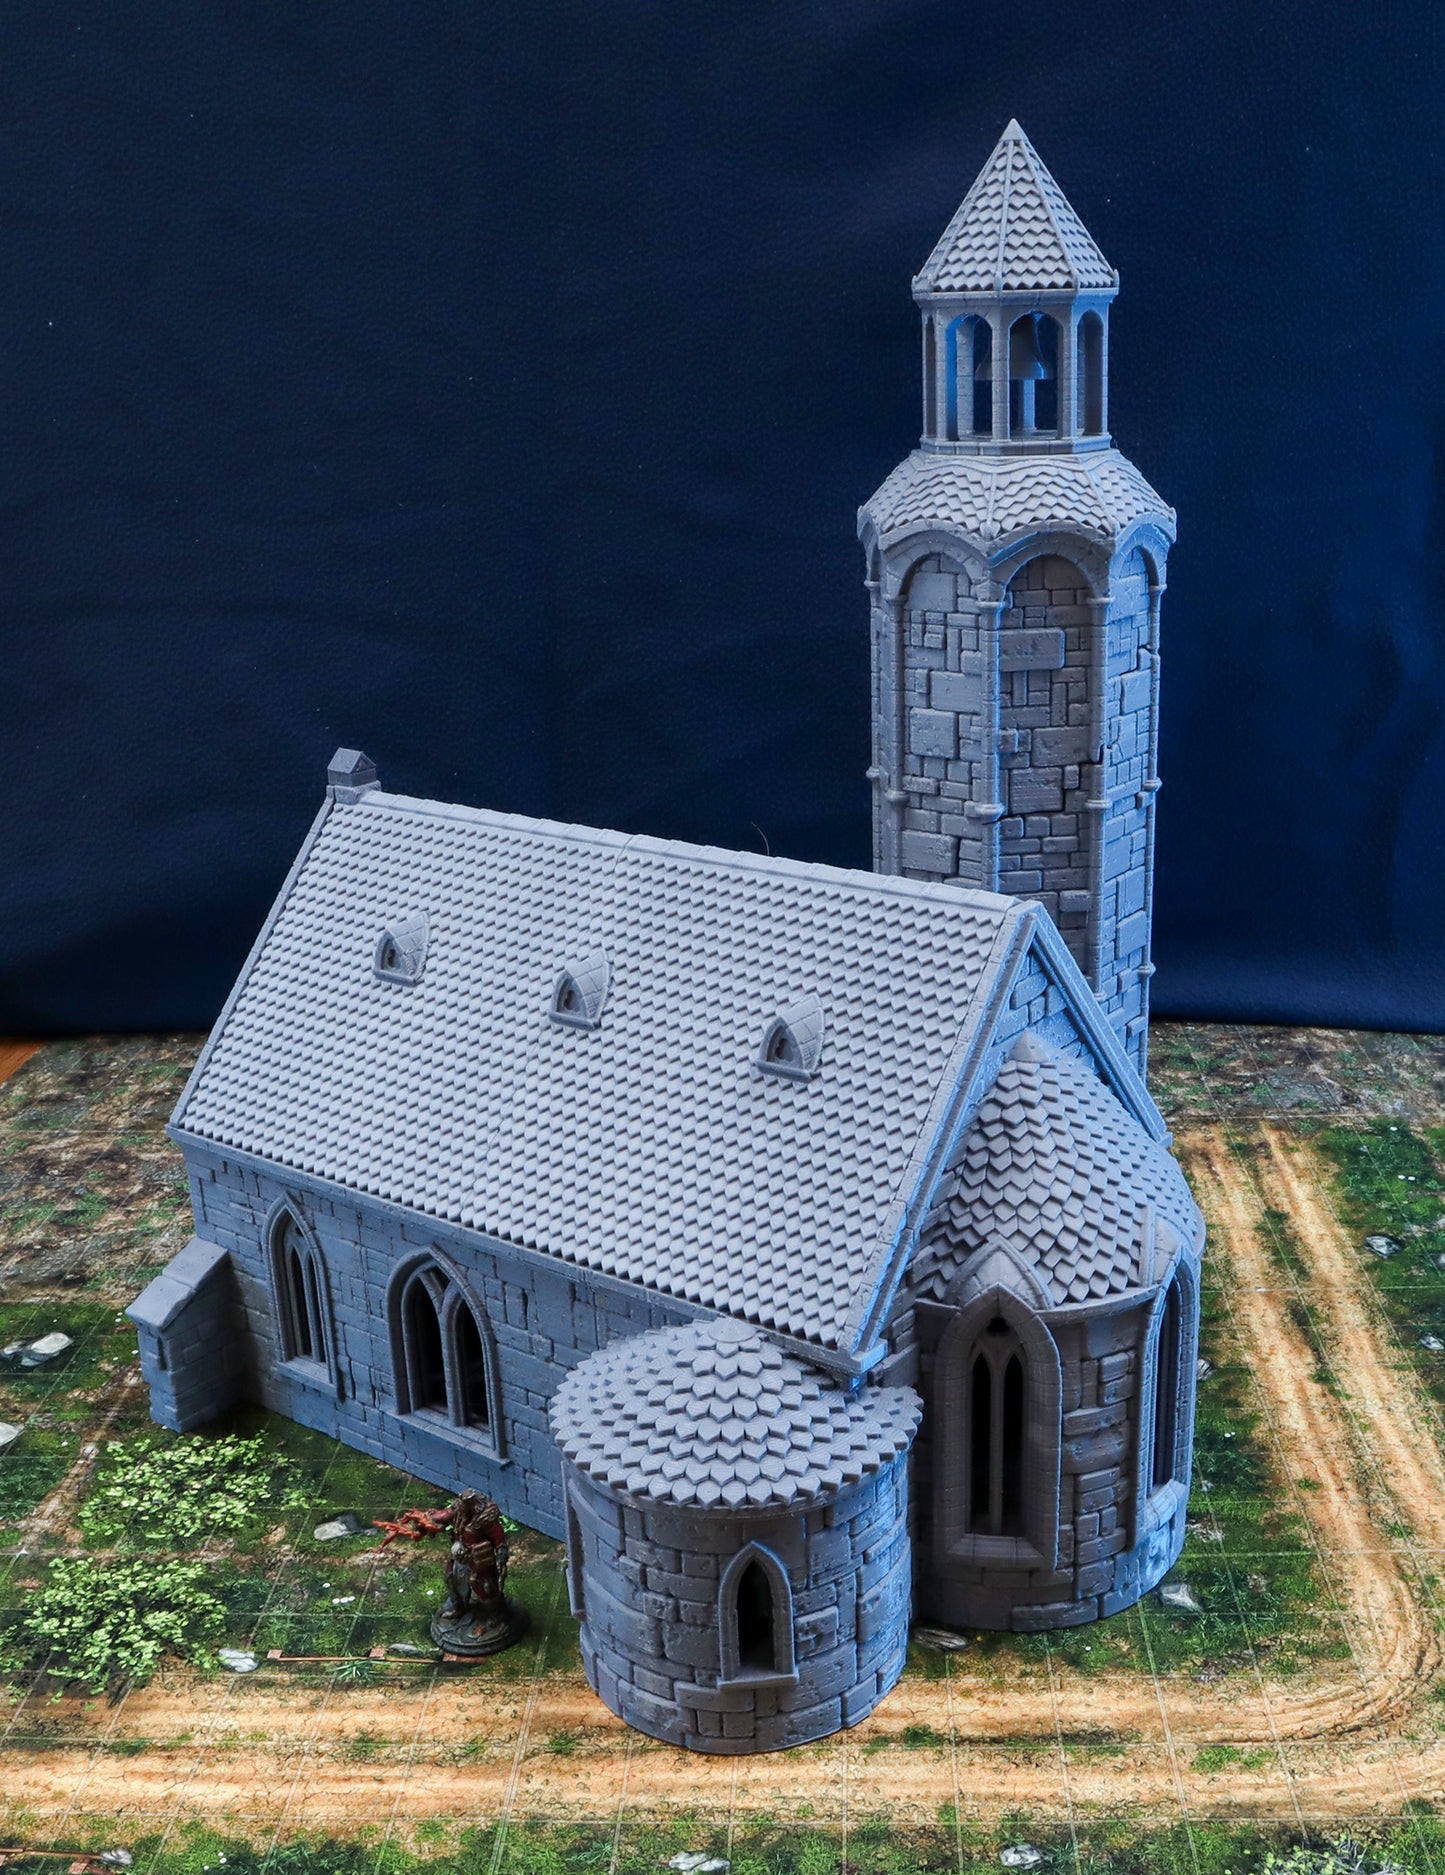 Rebuilt Church